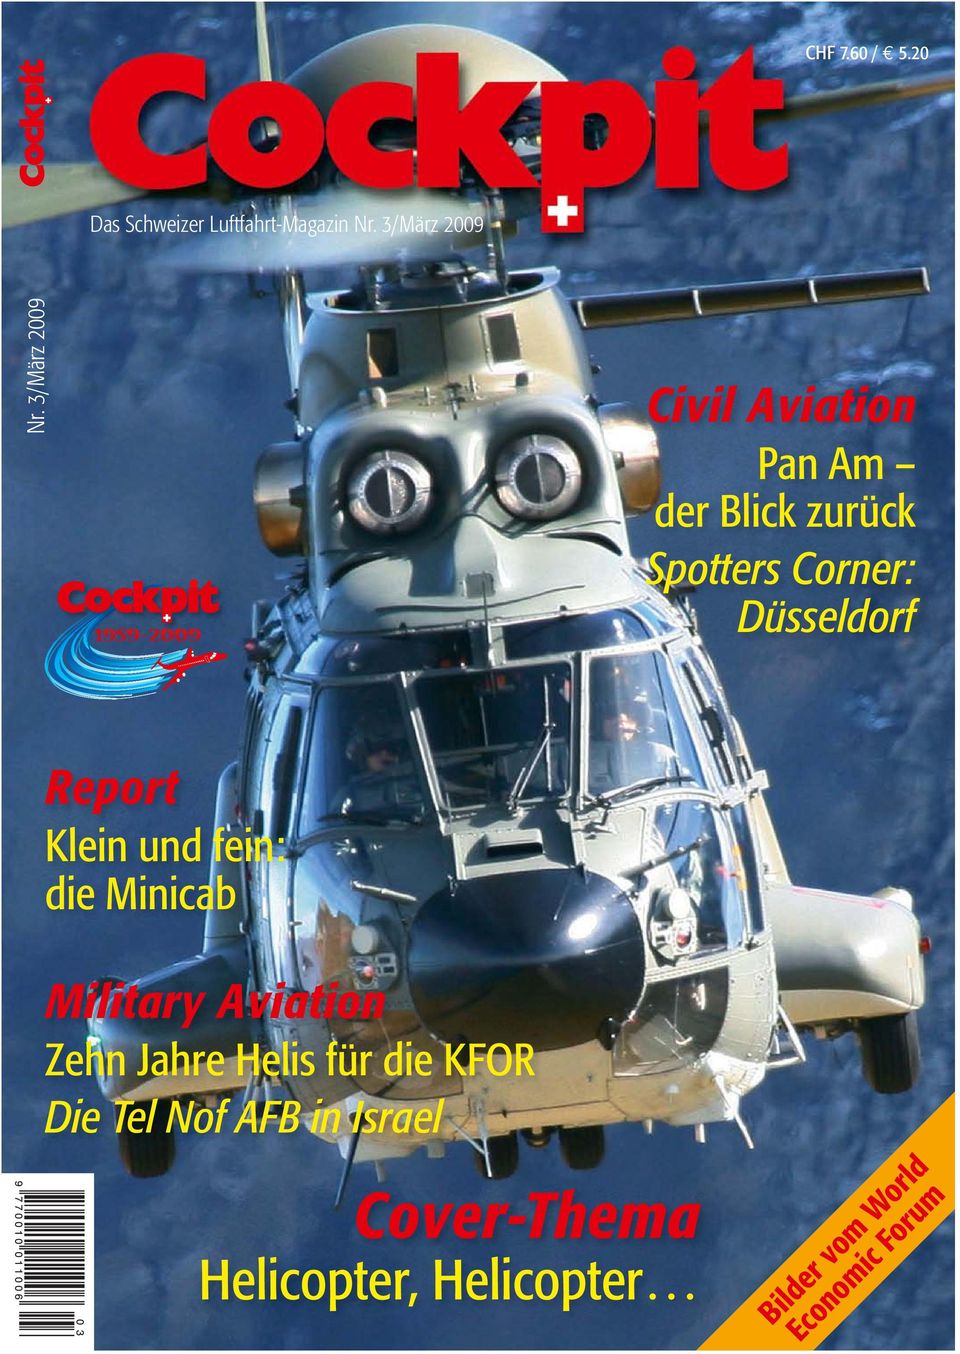 Report Klein und fein: die Minicab Military Aviation Zehn Jahre Helis für die